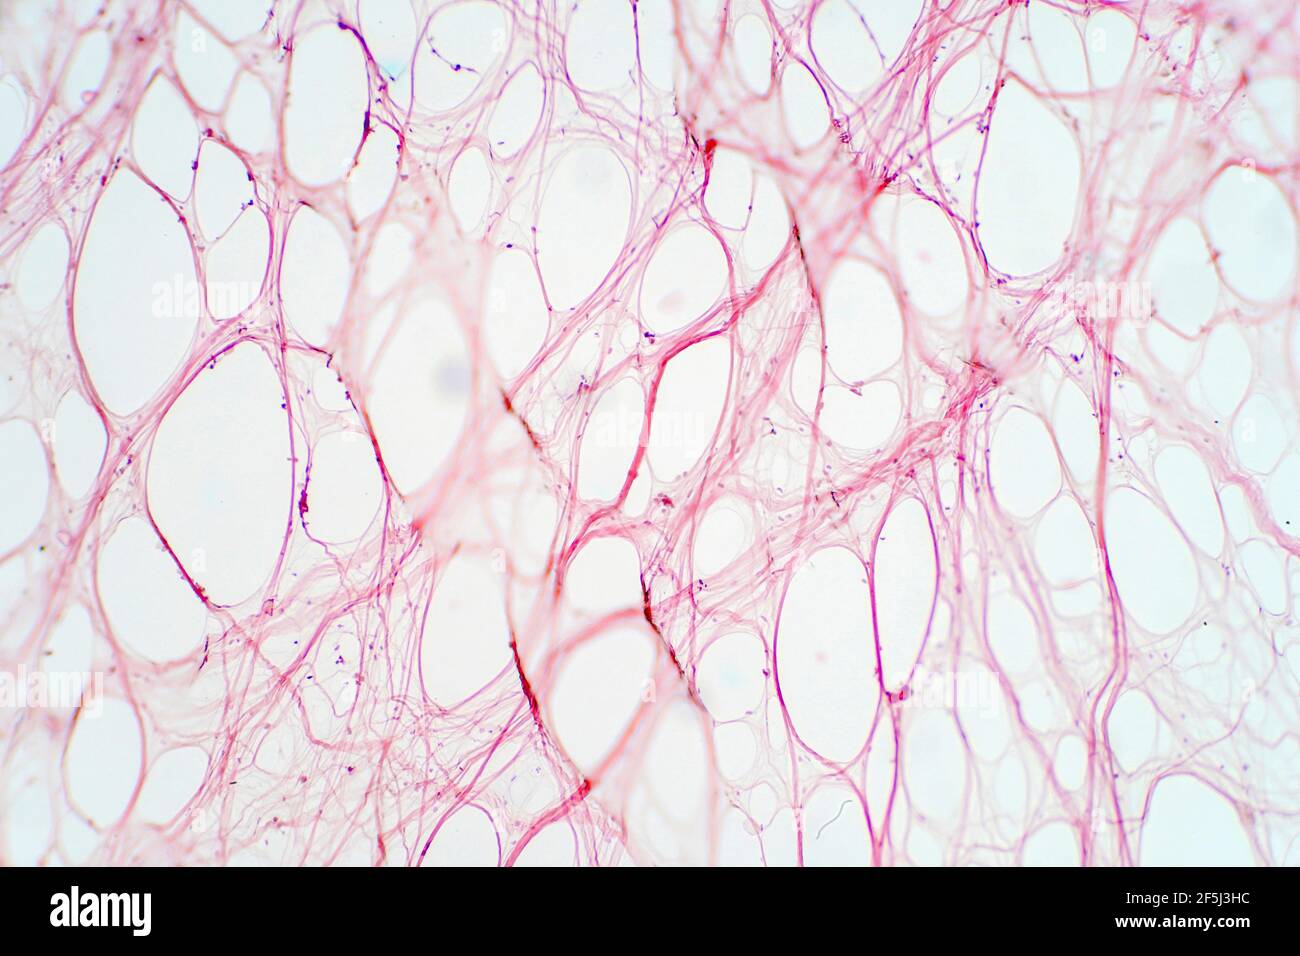 reticular tissue under microscope